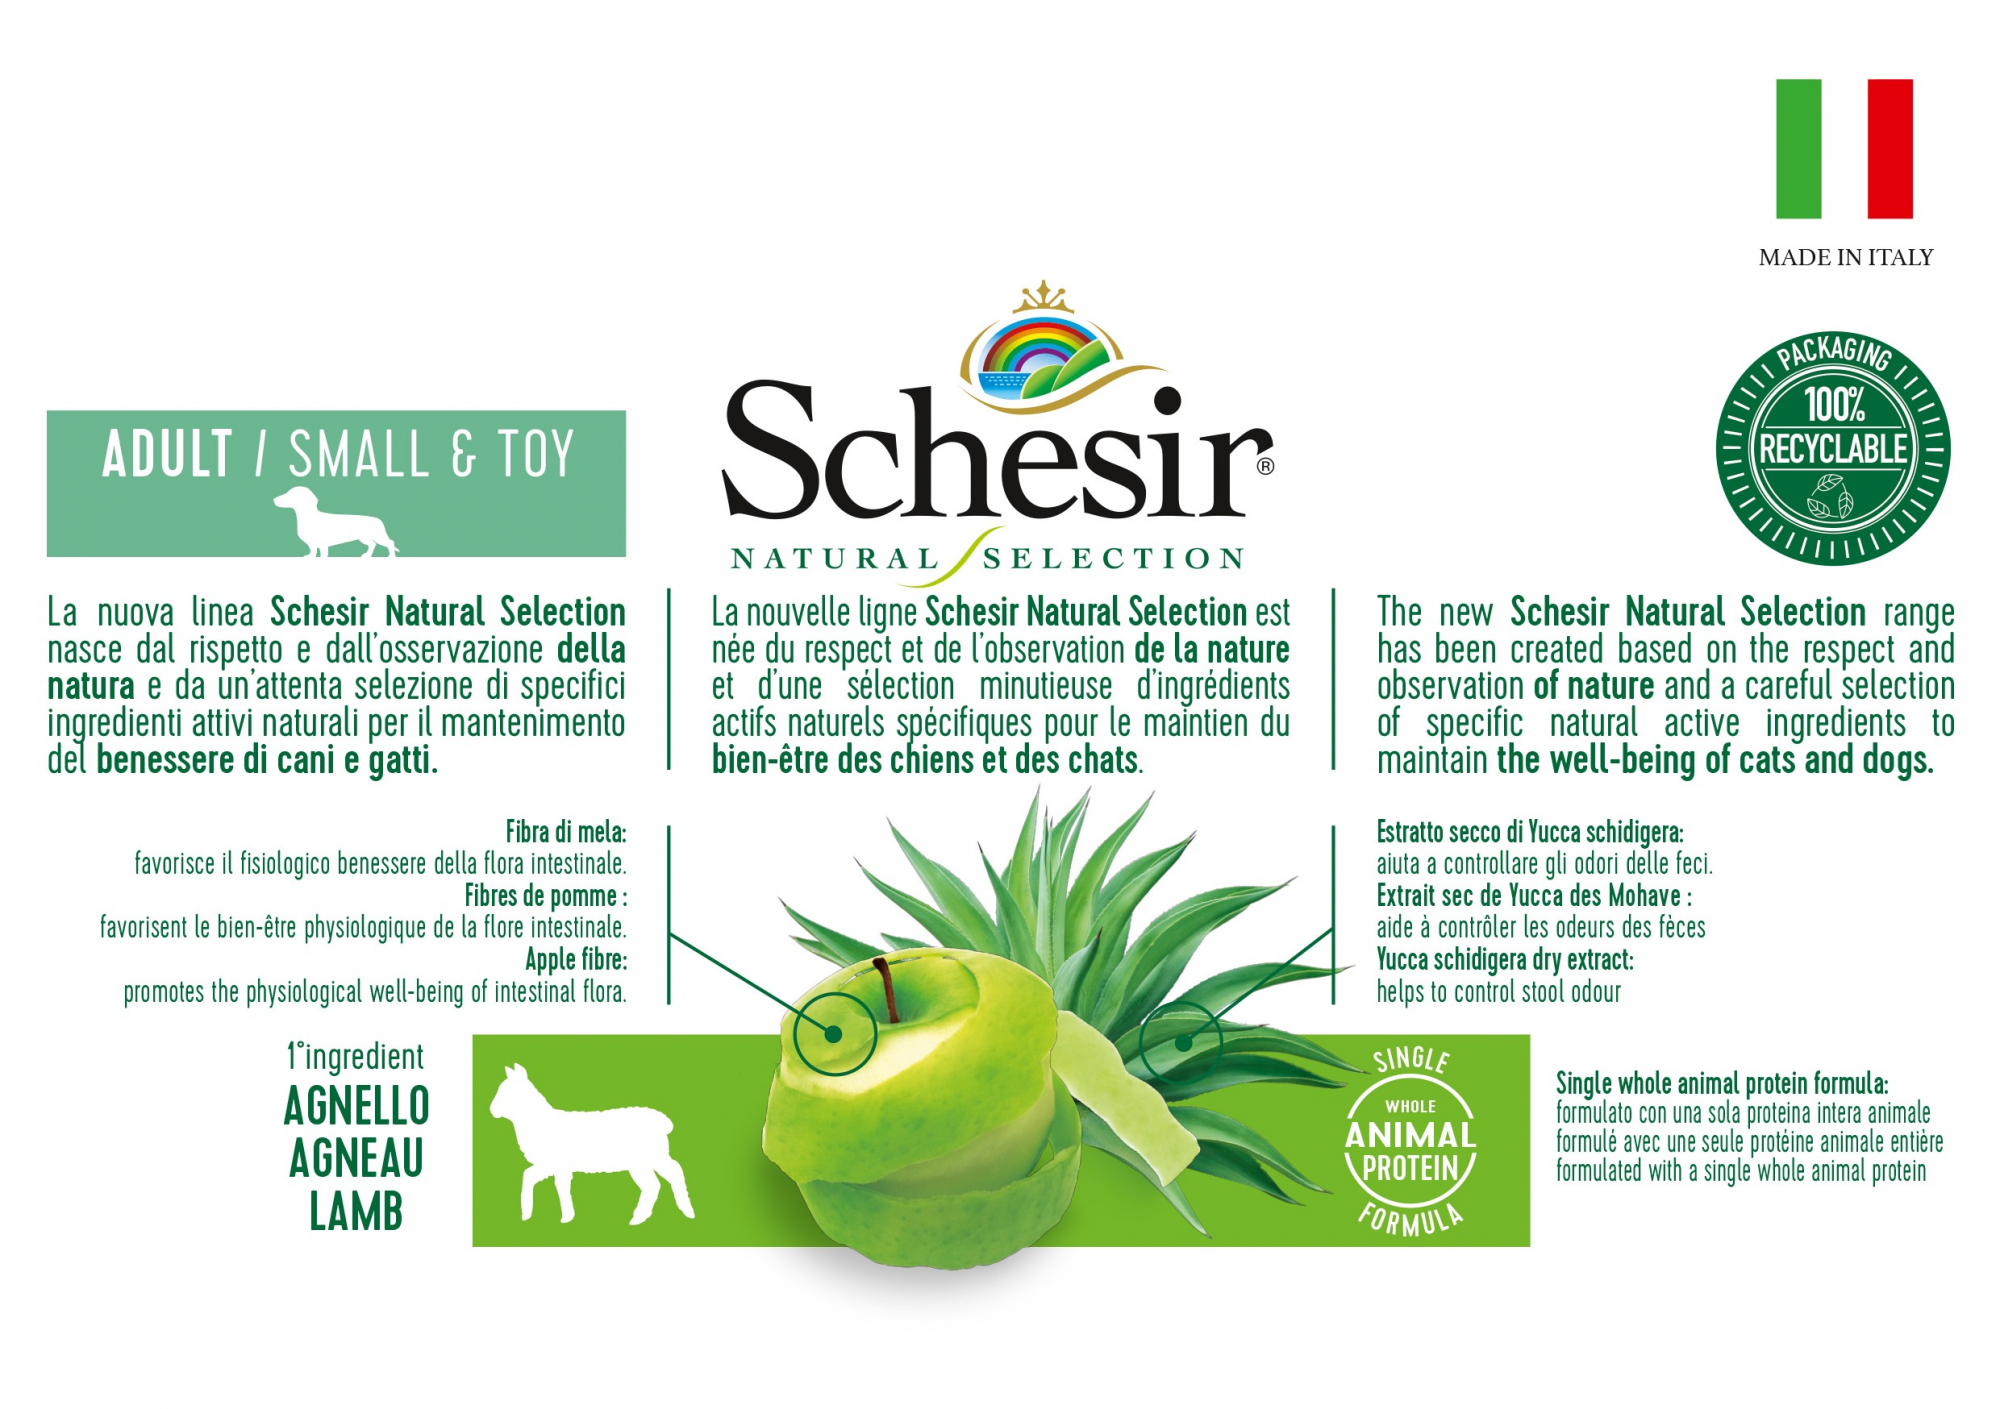 Schesir Natural Selection - Alimento seco monoproteico de cordeiro para cão de porte pequeno adulto